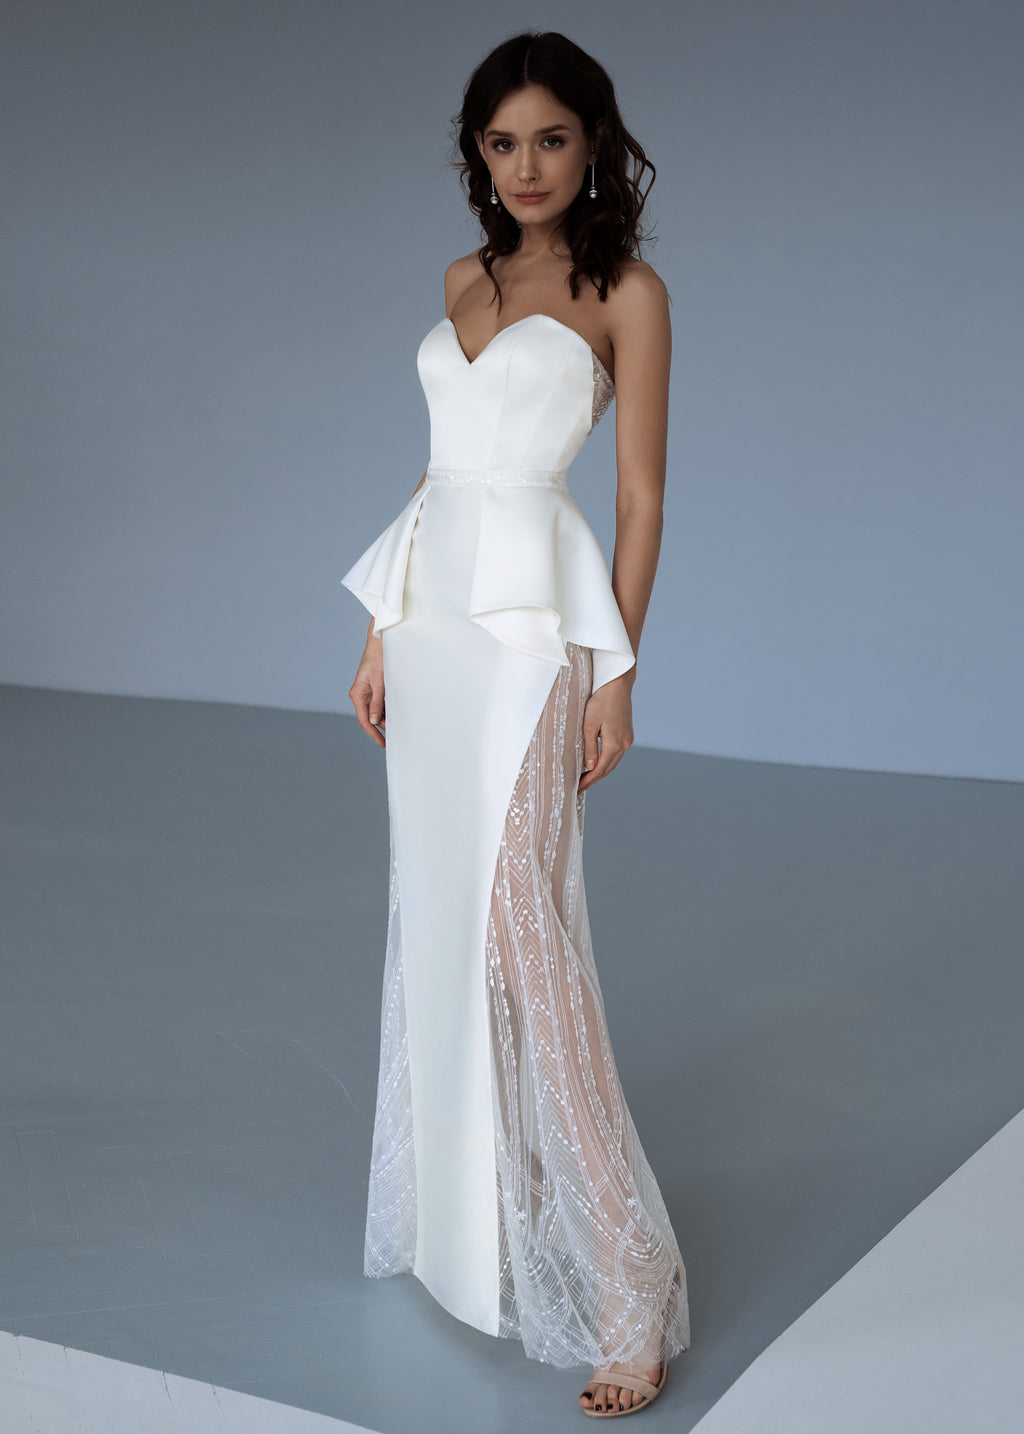 Elegant white wedding dress.